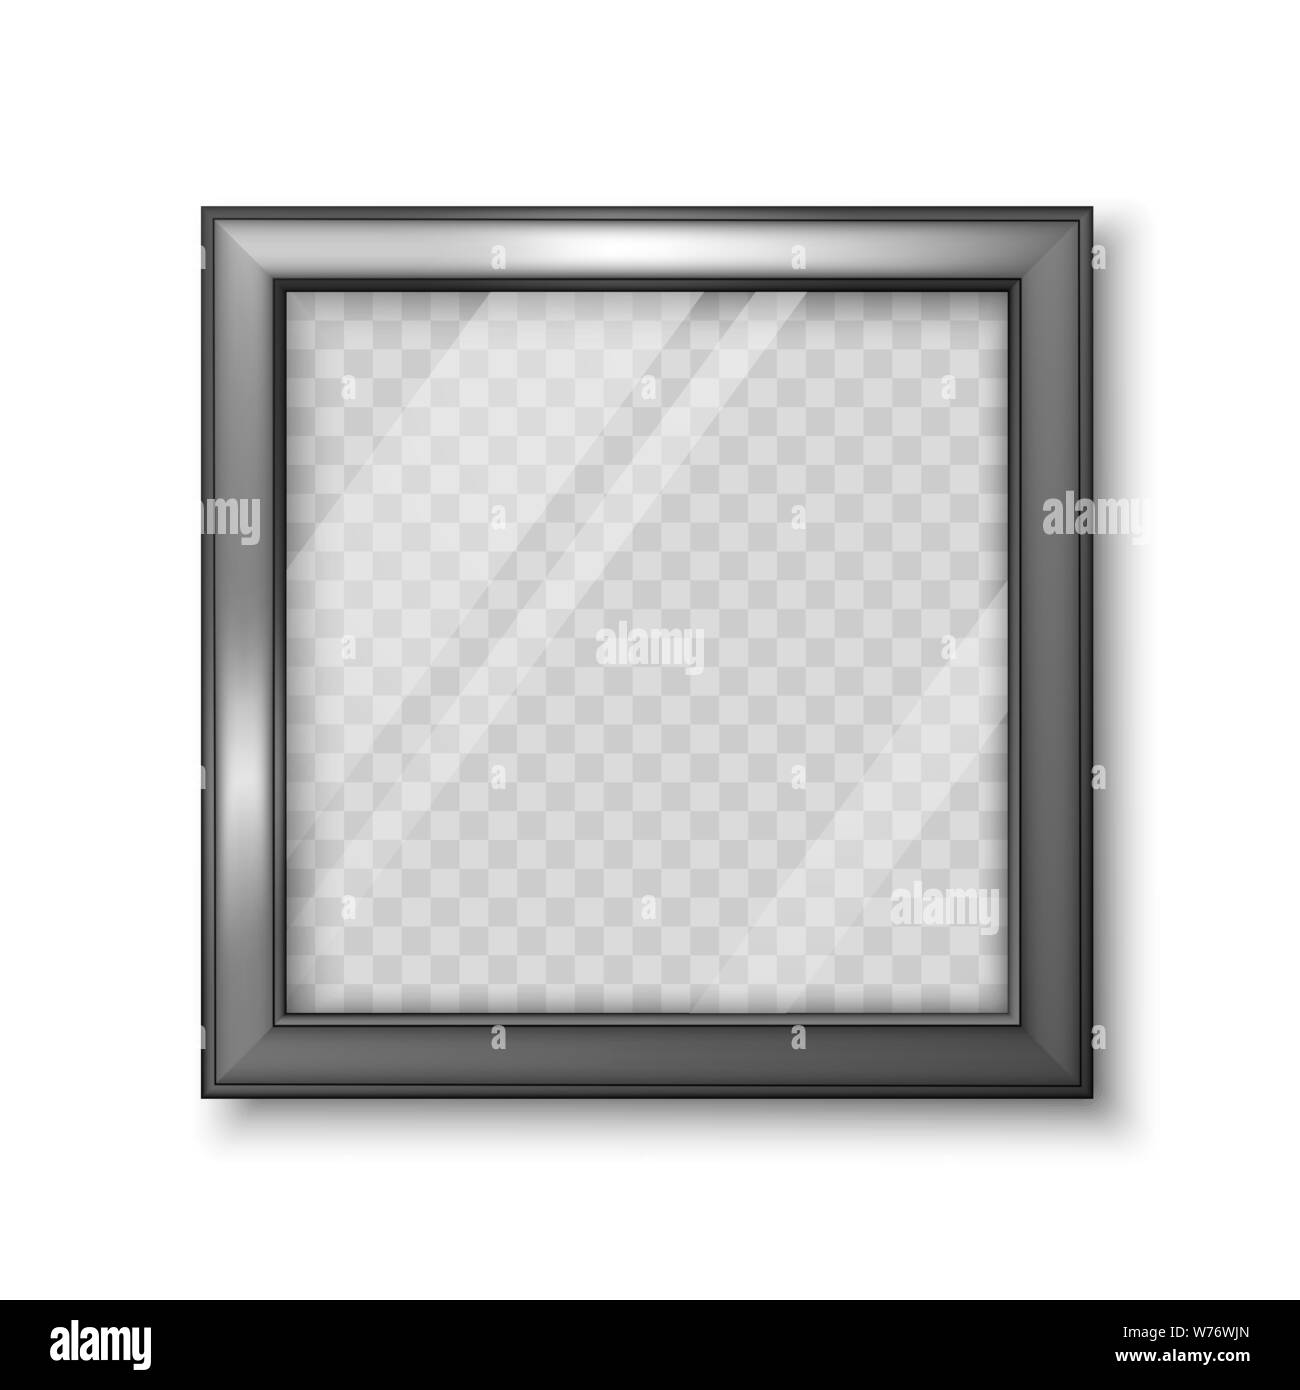 Piazza realistico telaio nero con sfondo trasparente per le foto o immagine. Illustrazione di vettore isolato su sfondo bianco Illustrazione Vettoriale